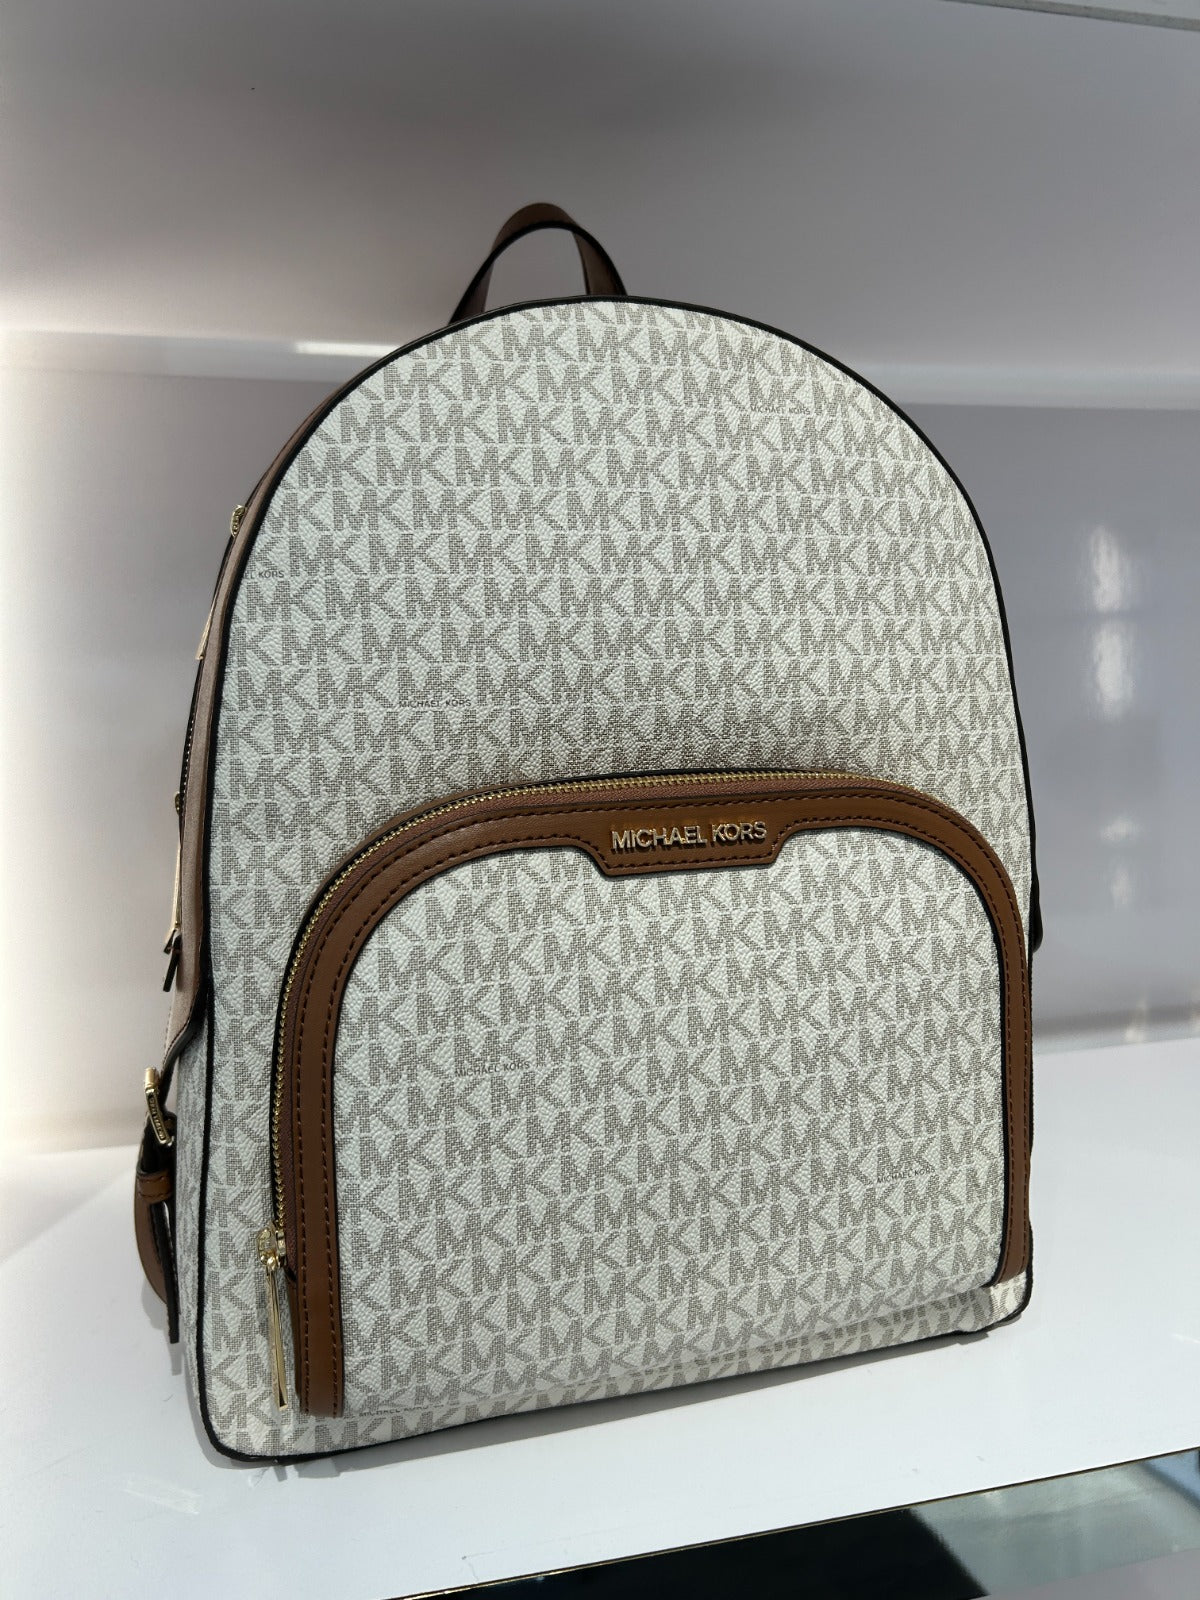 Michael Kors Jaycee Backpack Large In Monogram Vanilla (Pre-Order)